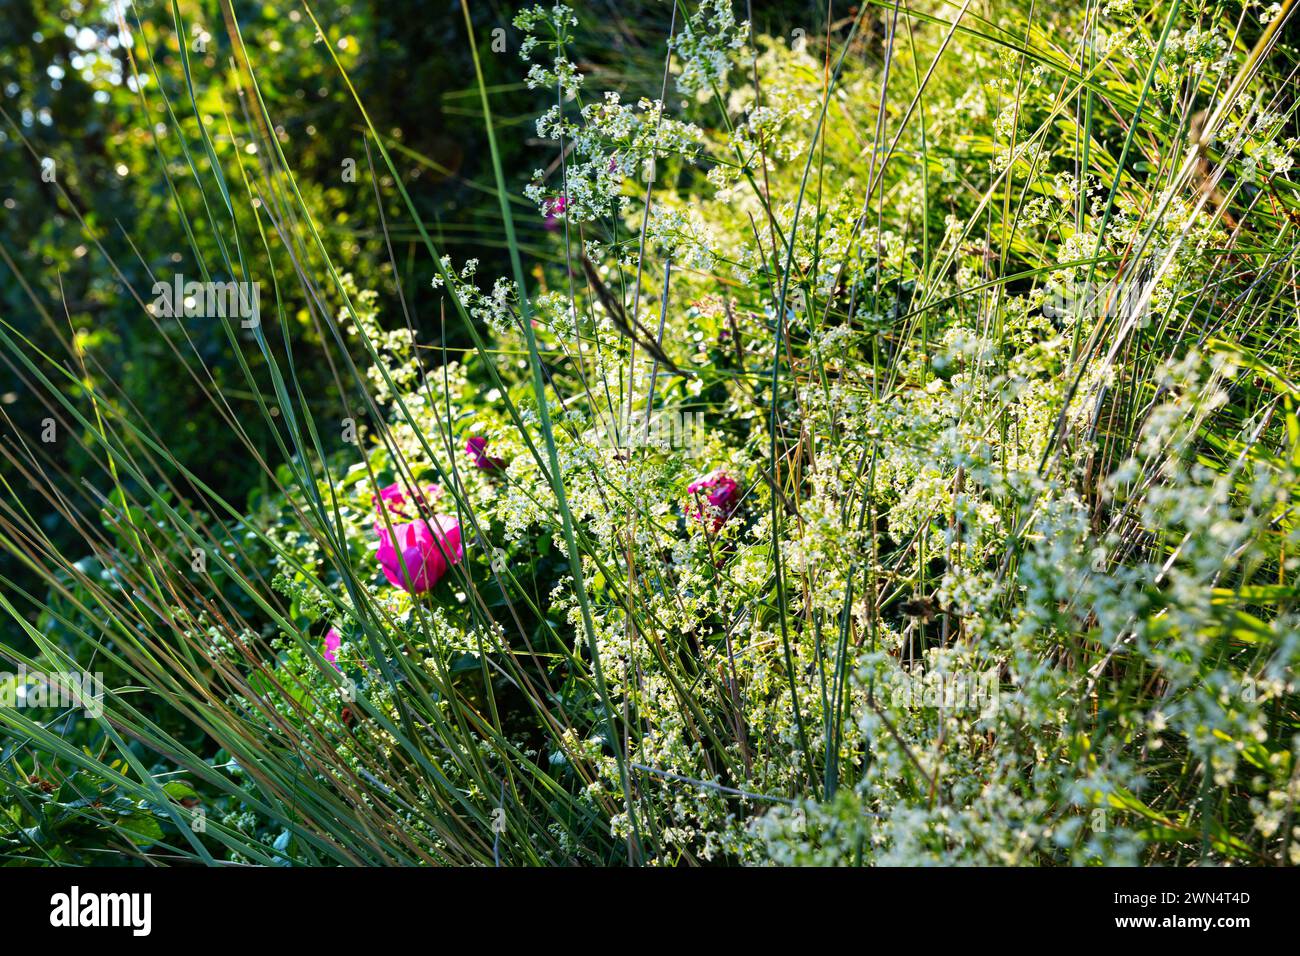 Un mur vert avec des herbes, des herbes vertes, des fleurs roses et des arbustes photographiés contre le soleil. Banque D'Images